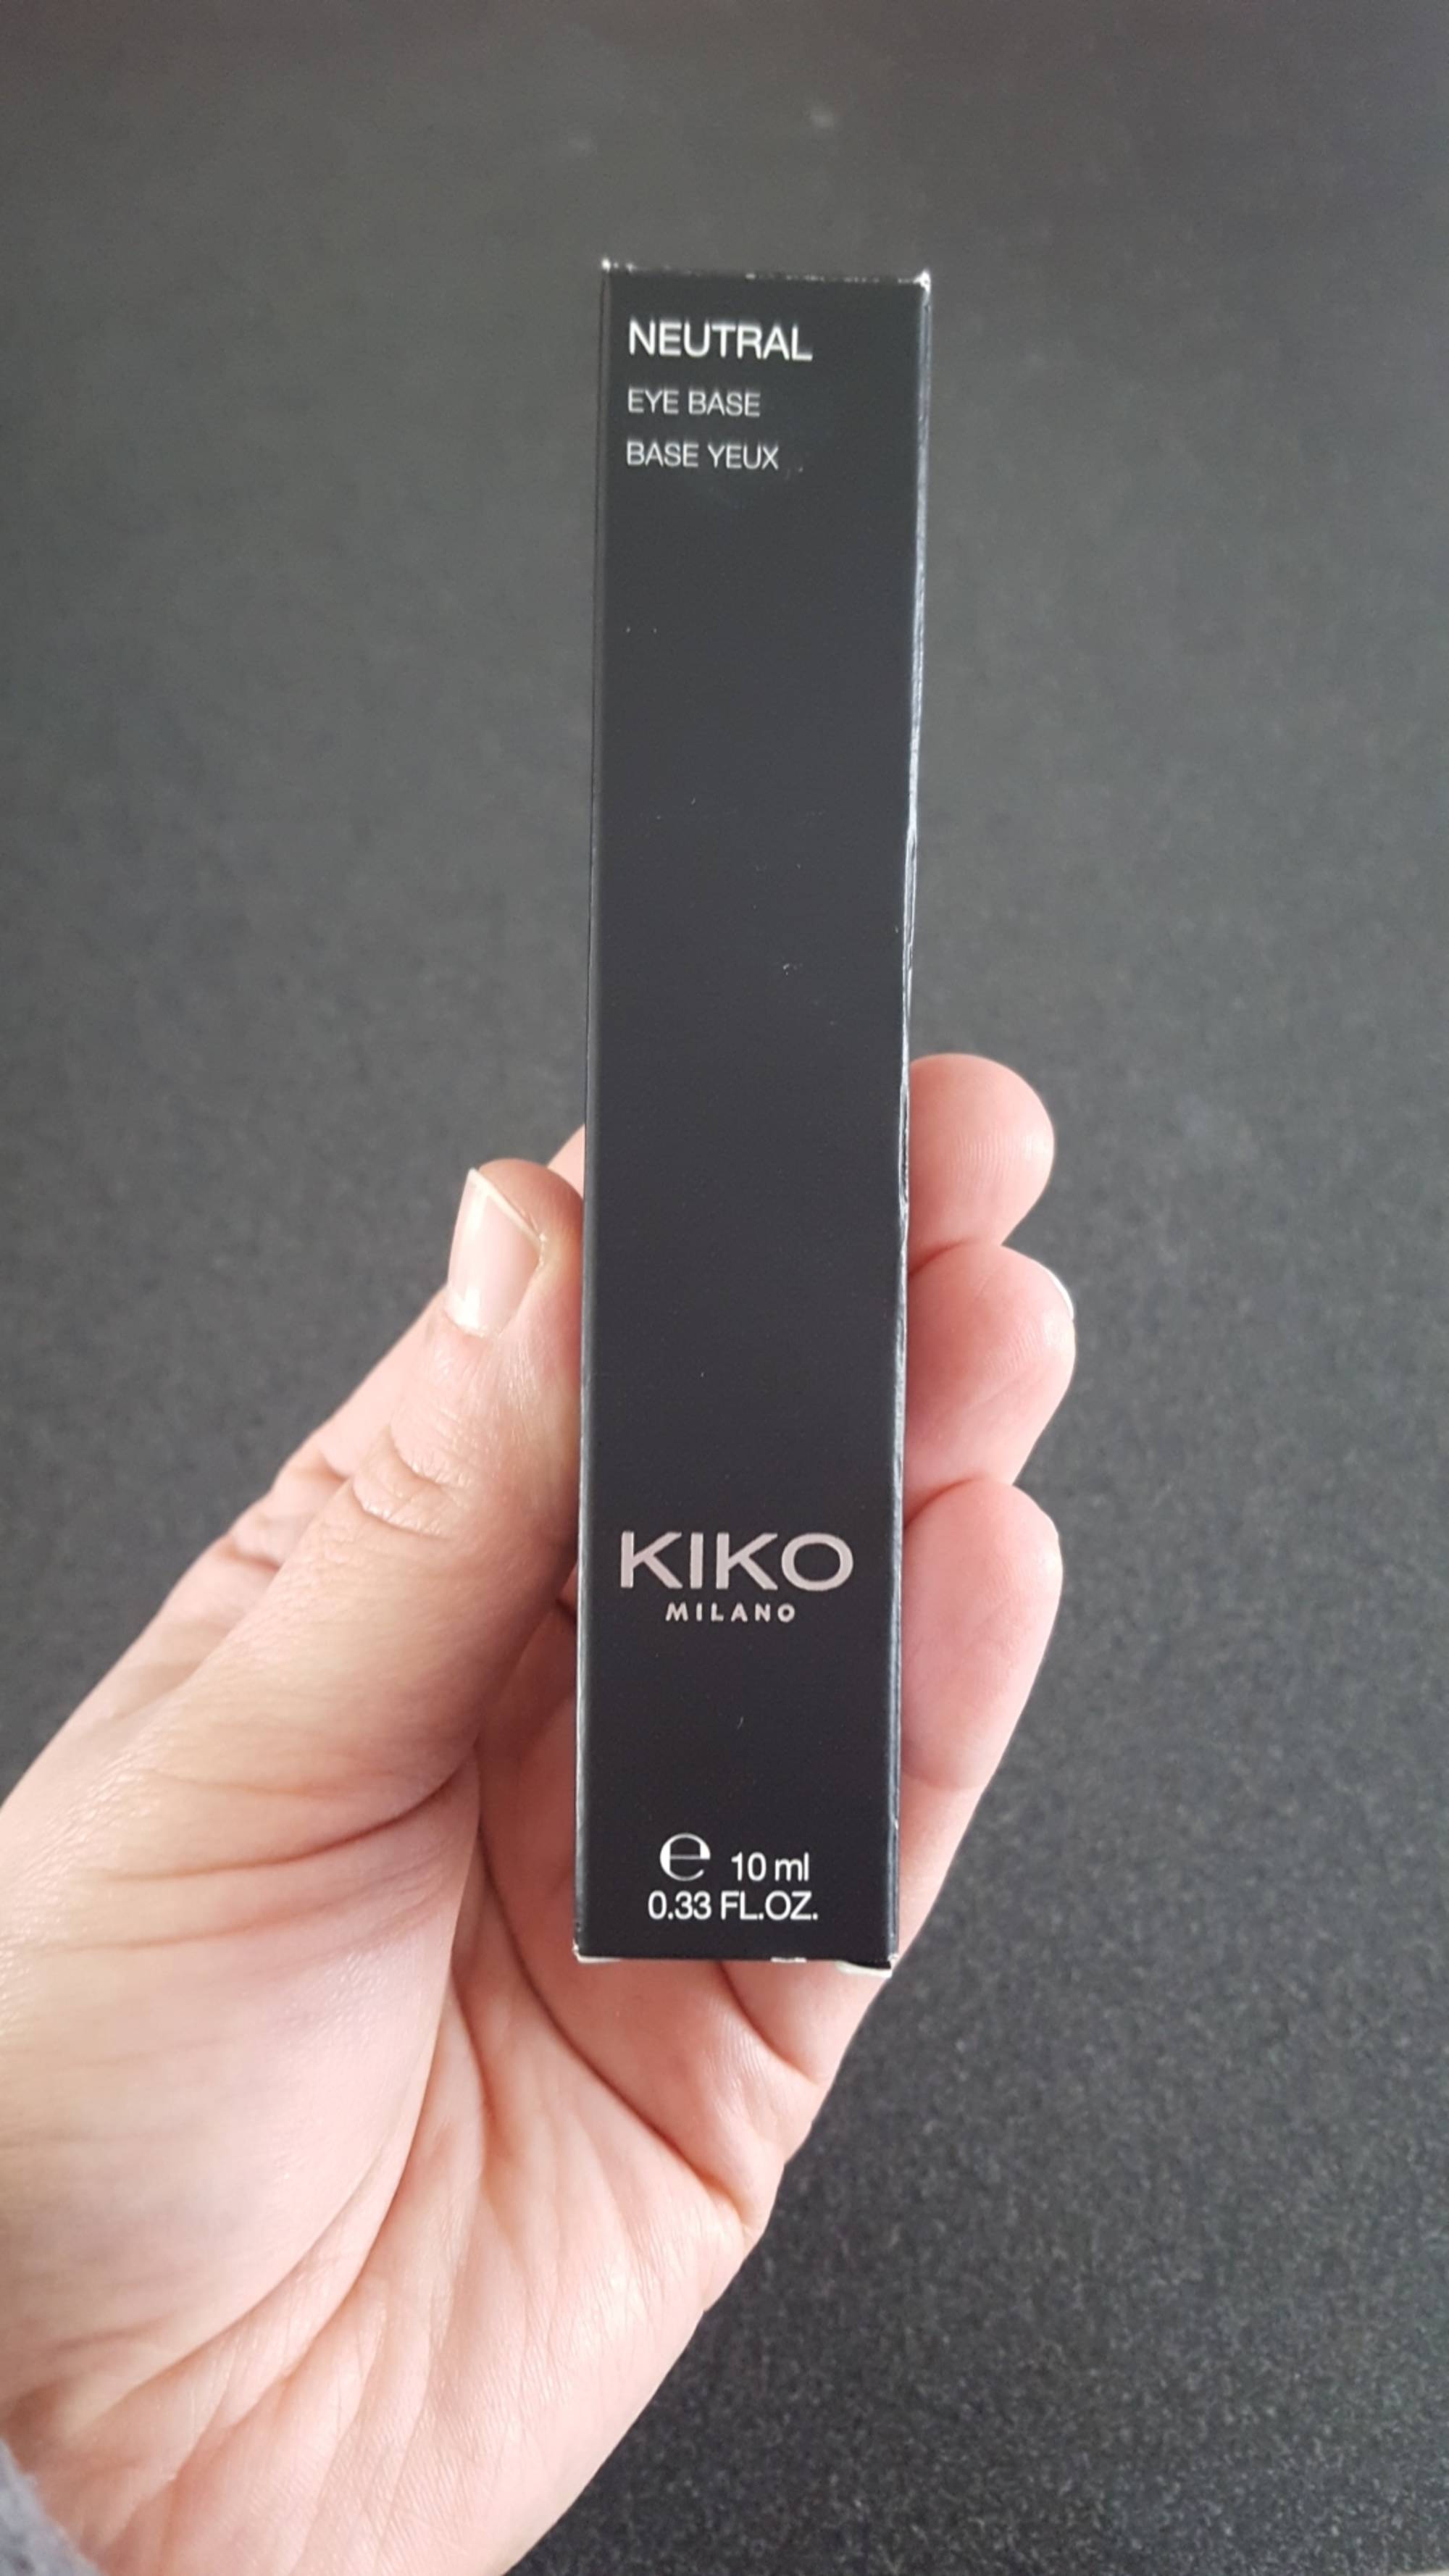 KIKO - Neutral - Base yeux